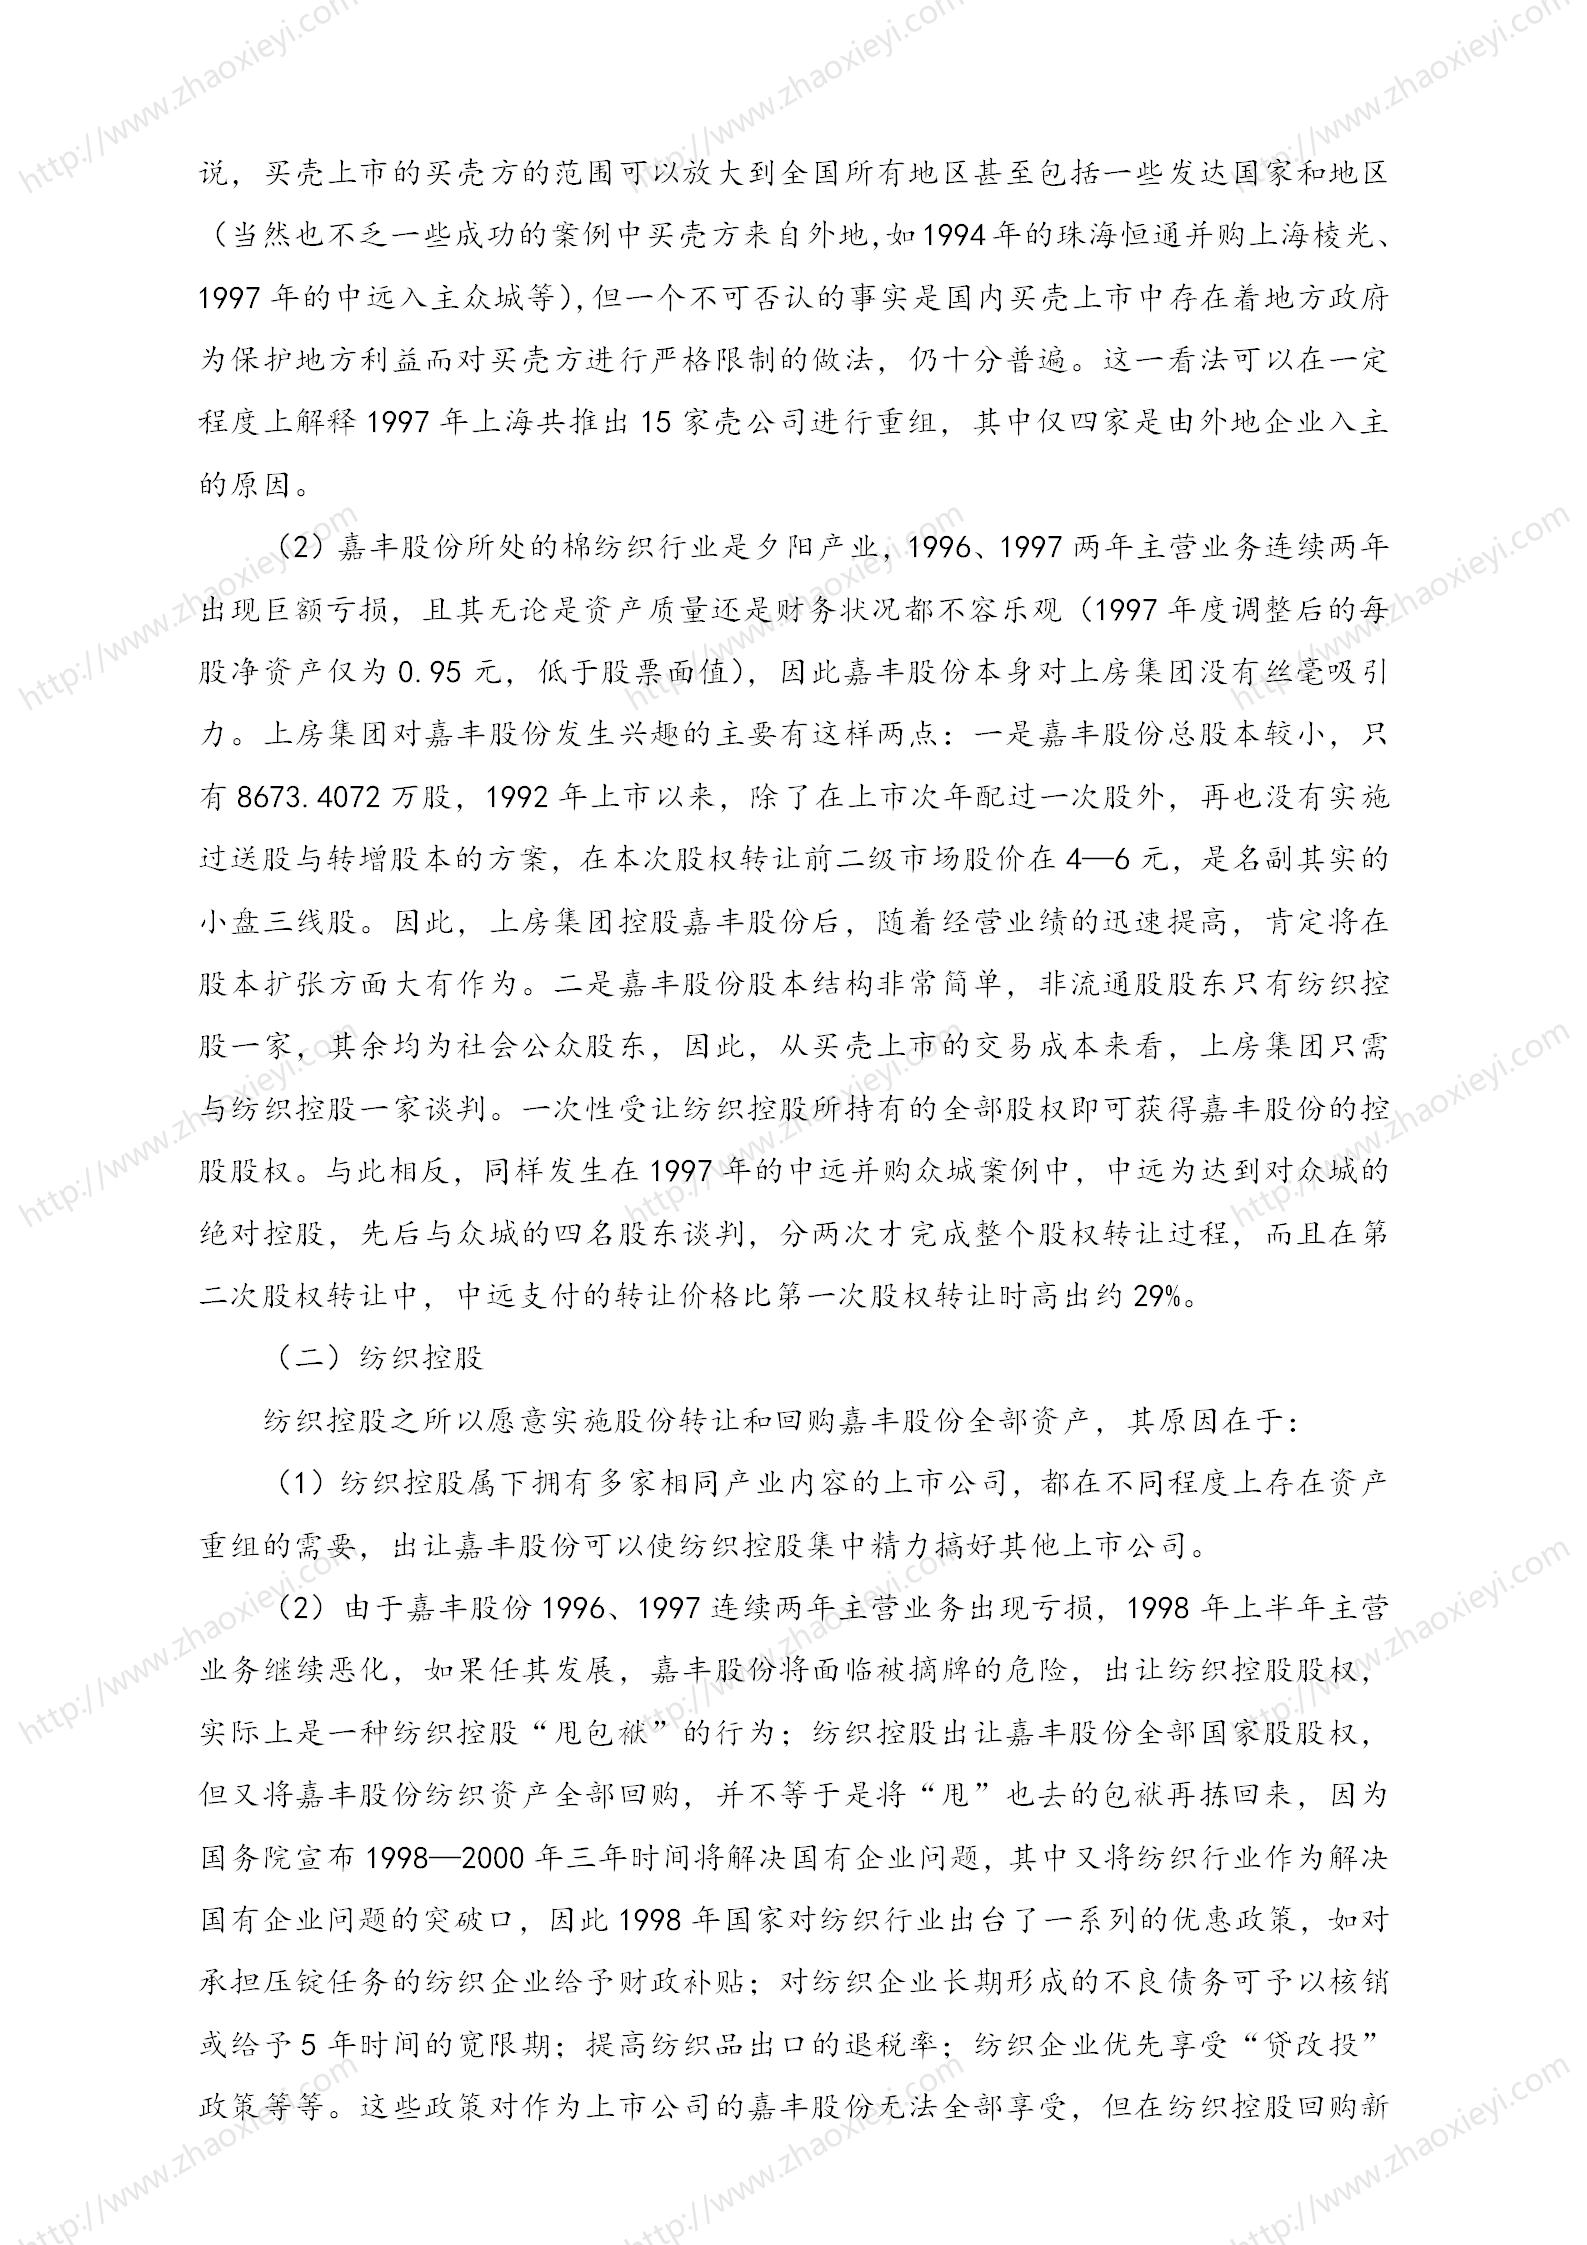 中国企业并购经典案例_109.jpg